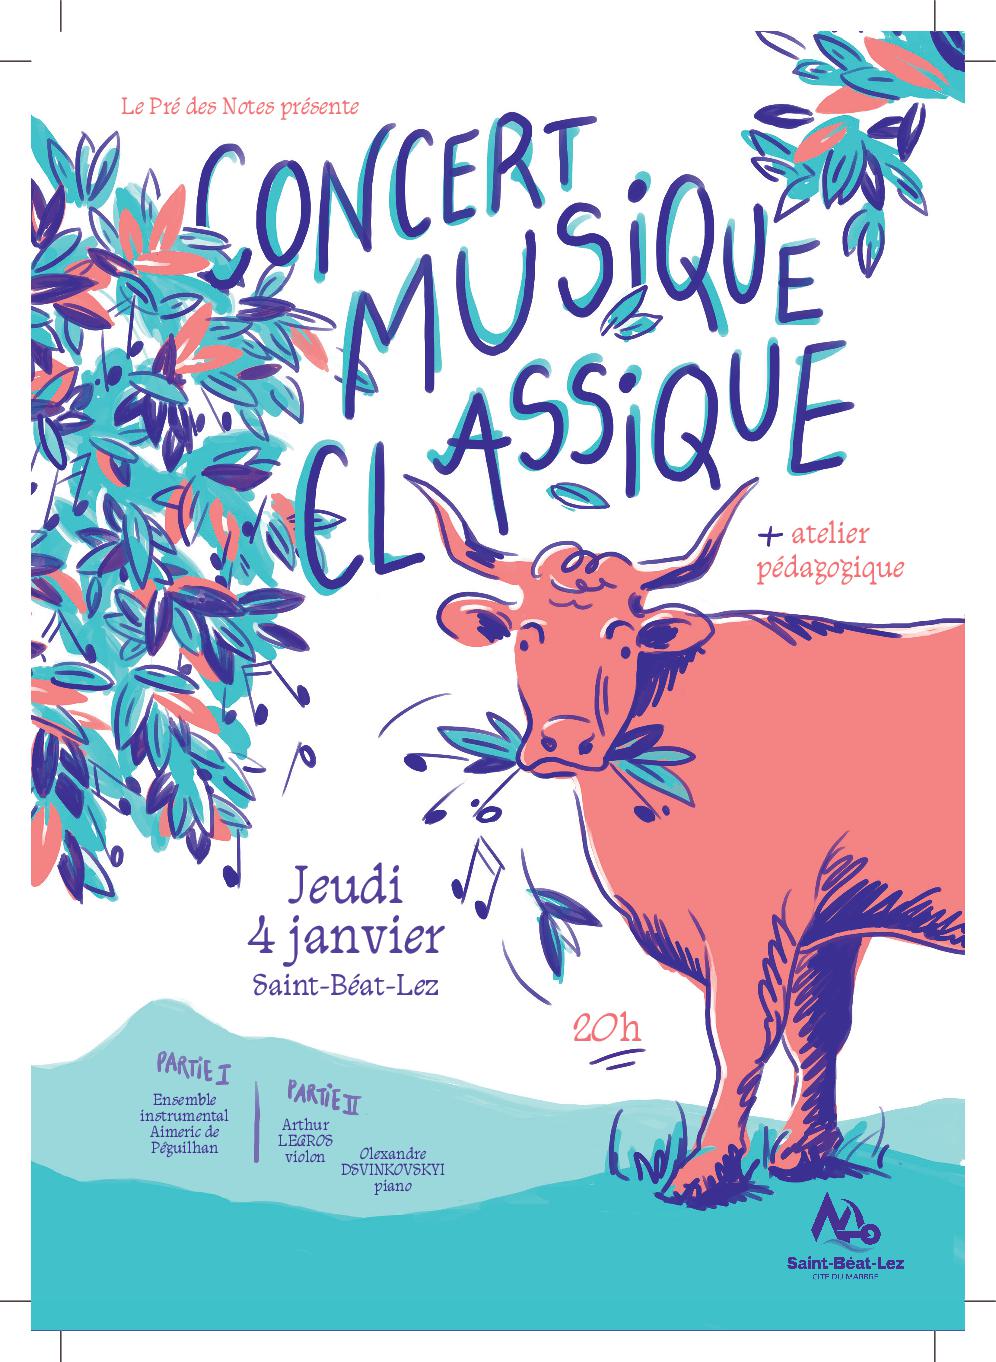 Jeudi 4 janvier, atelier pédagogique et concert de musique classique en l'église Saint-Privat de Saint-Béat